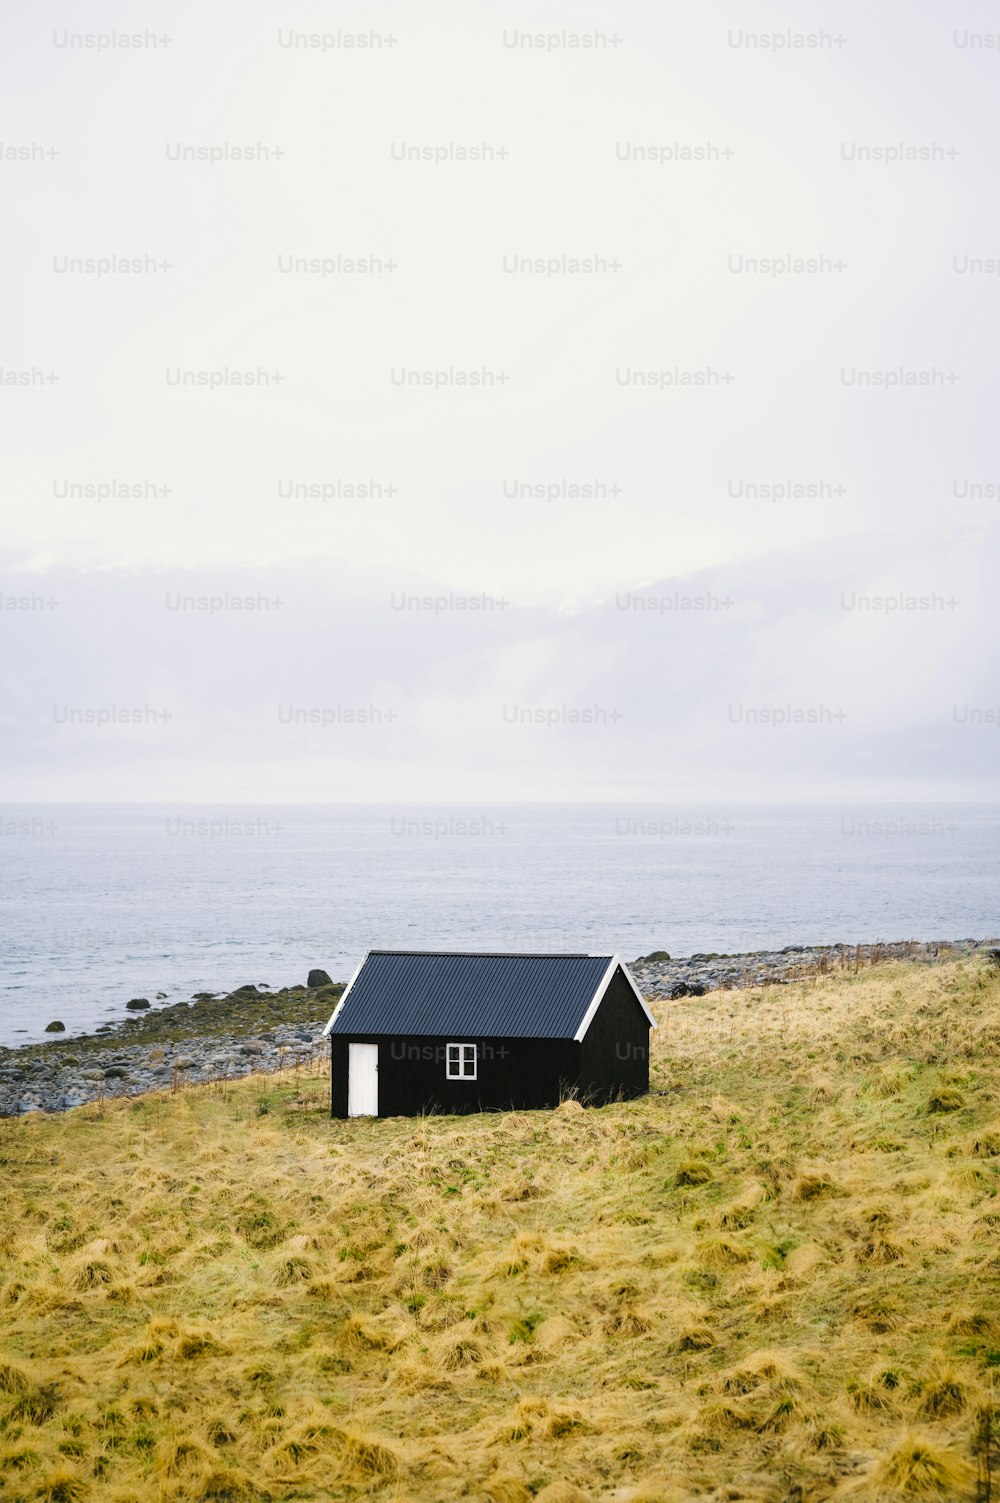 Una piccola casa nera seduta in cima a un campo coperto di erba